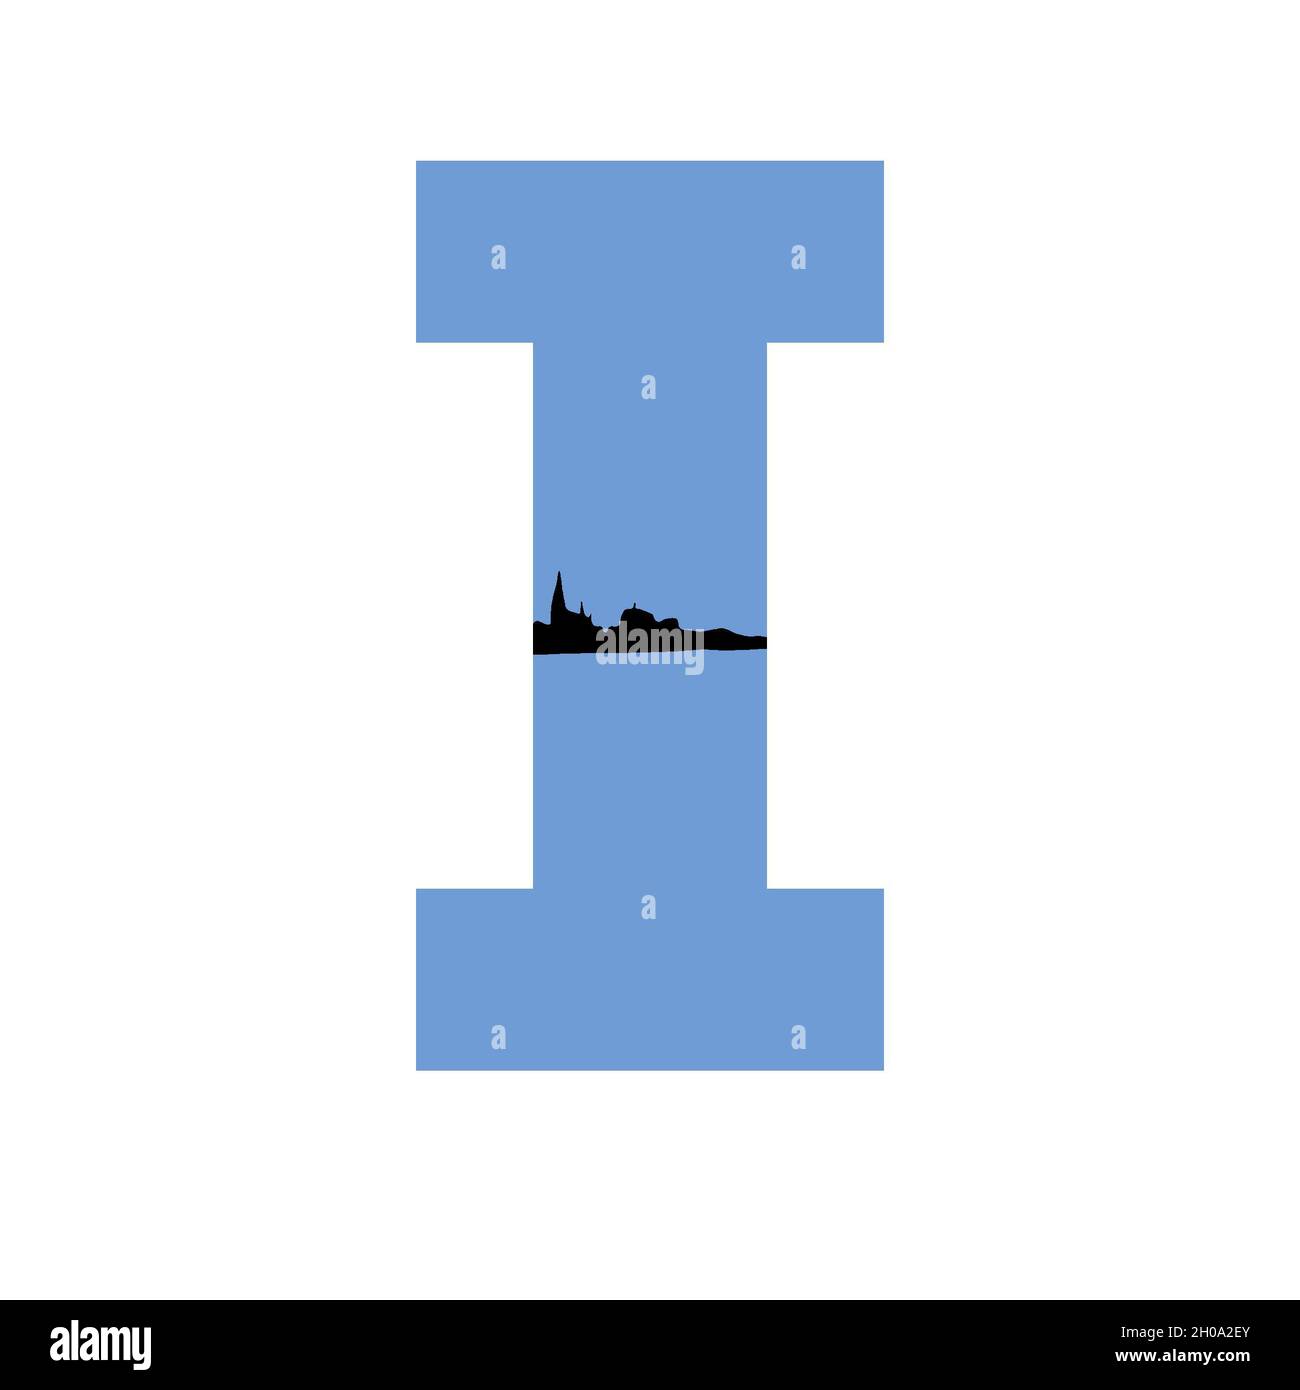 Lettera i dell'alfabeto fatto con uno sfondo blu e una silhouette di un villaggio, isolato su uno sfondo bianco Foto Stock